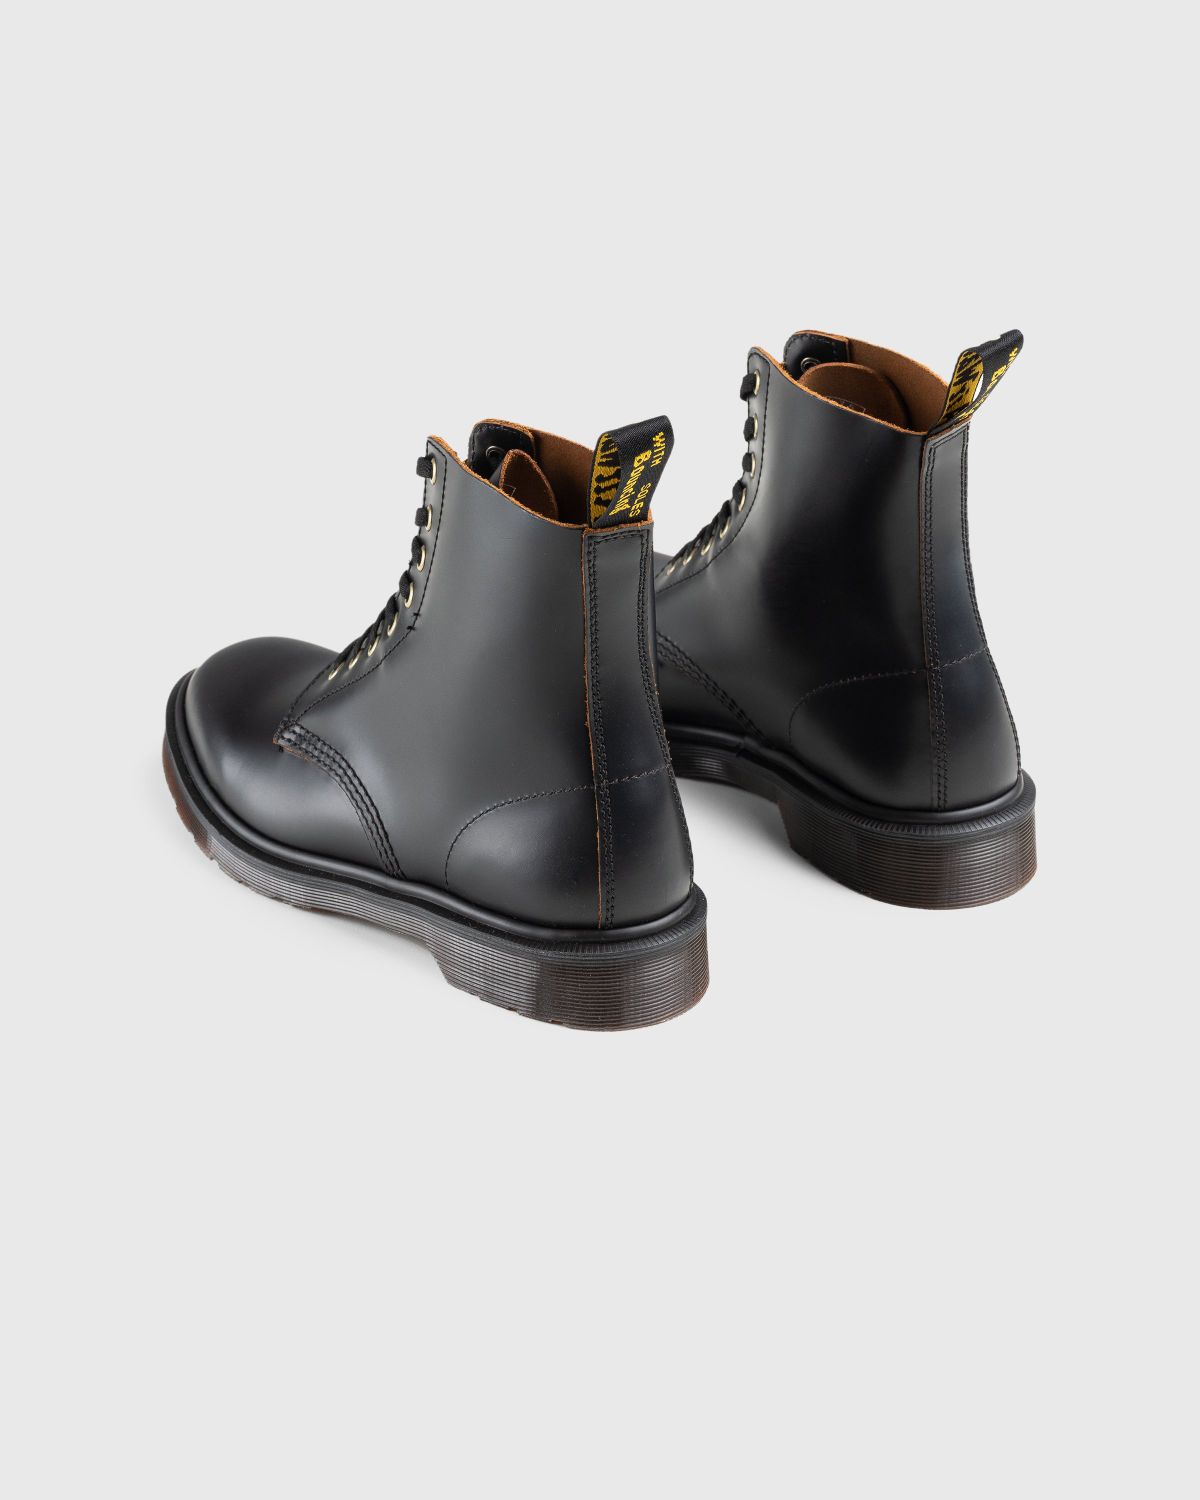 Dr. Martens – 1460 Vintage Smooth Black - Boots - Black - Image 4